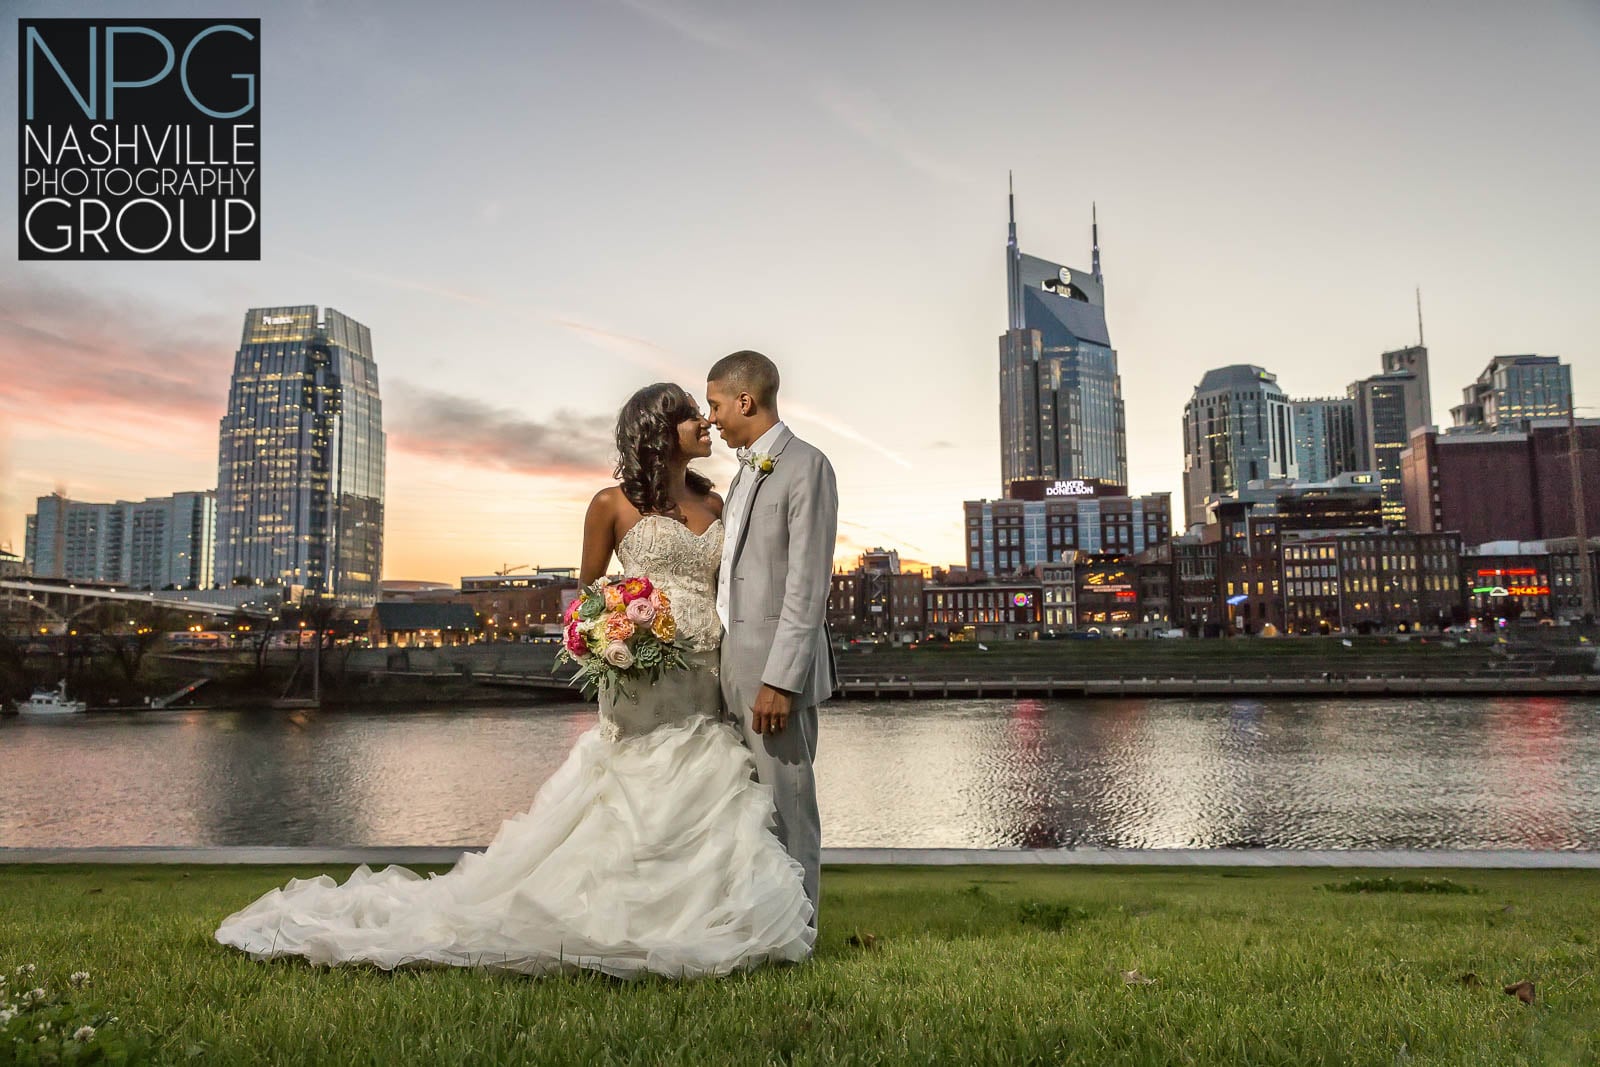 Nashville Photography Group wedding photographers1.jpg